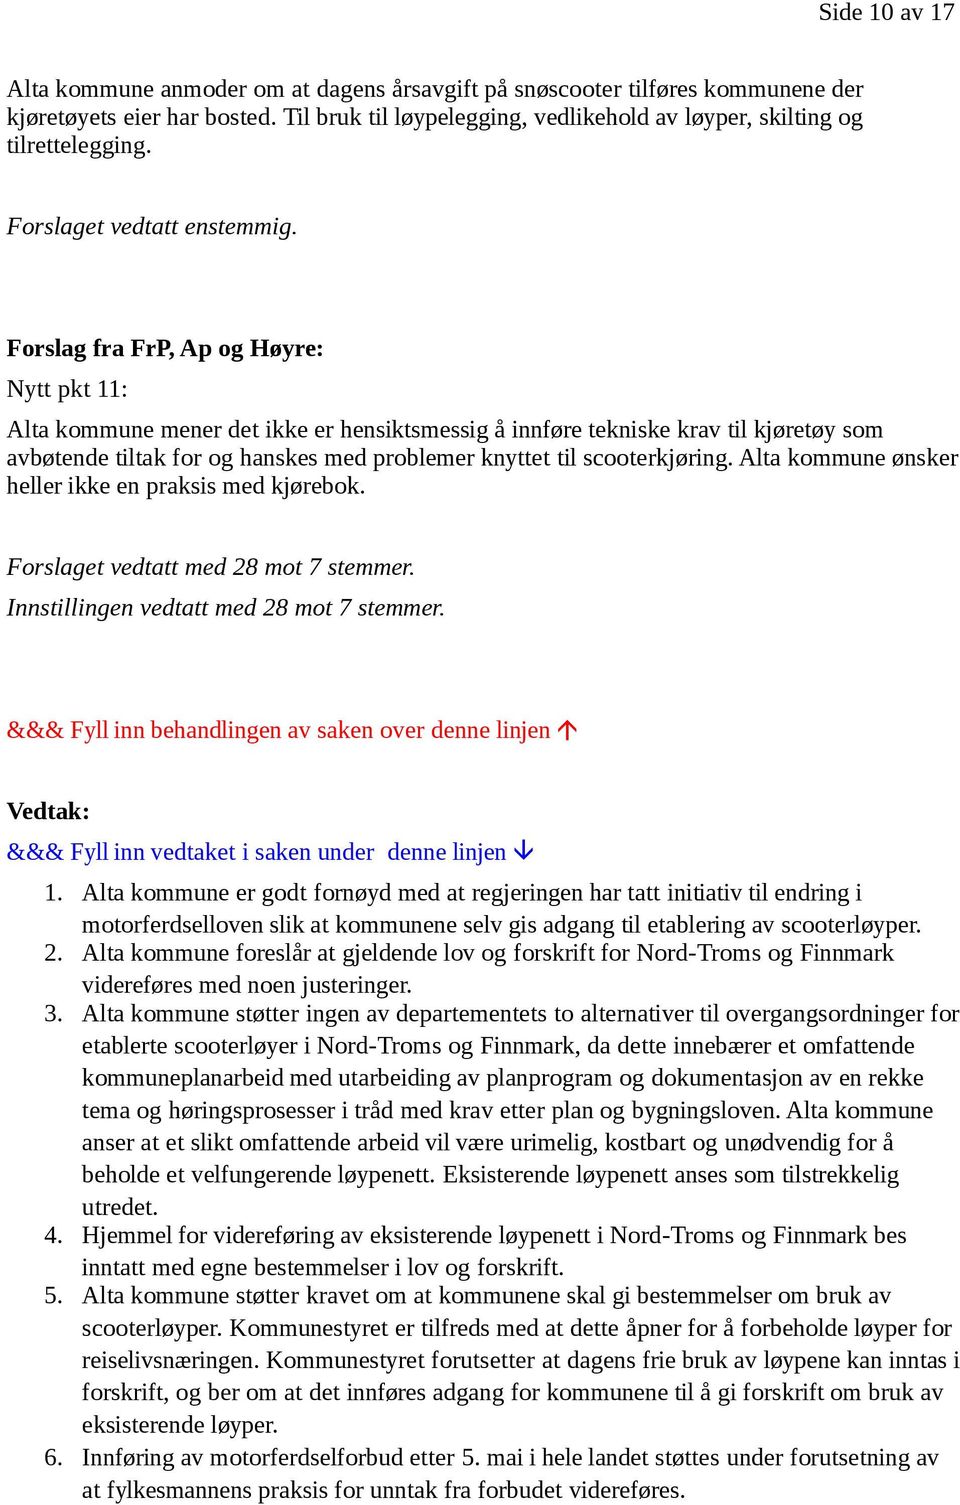 Forslag fra FrP, Ap og Høyre: Nytt pkt 11: Alta kommune mener det ikke er hensiktsmessig å innføre tekniske krav til kjøretøy som avbøtende tiltak for og hanskes med problemer knyttet til